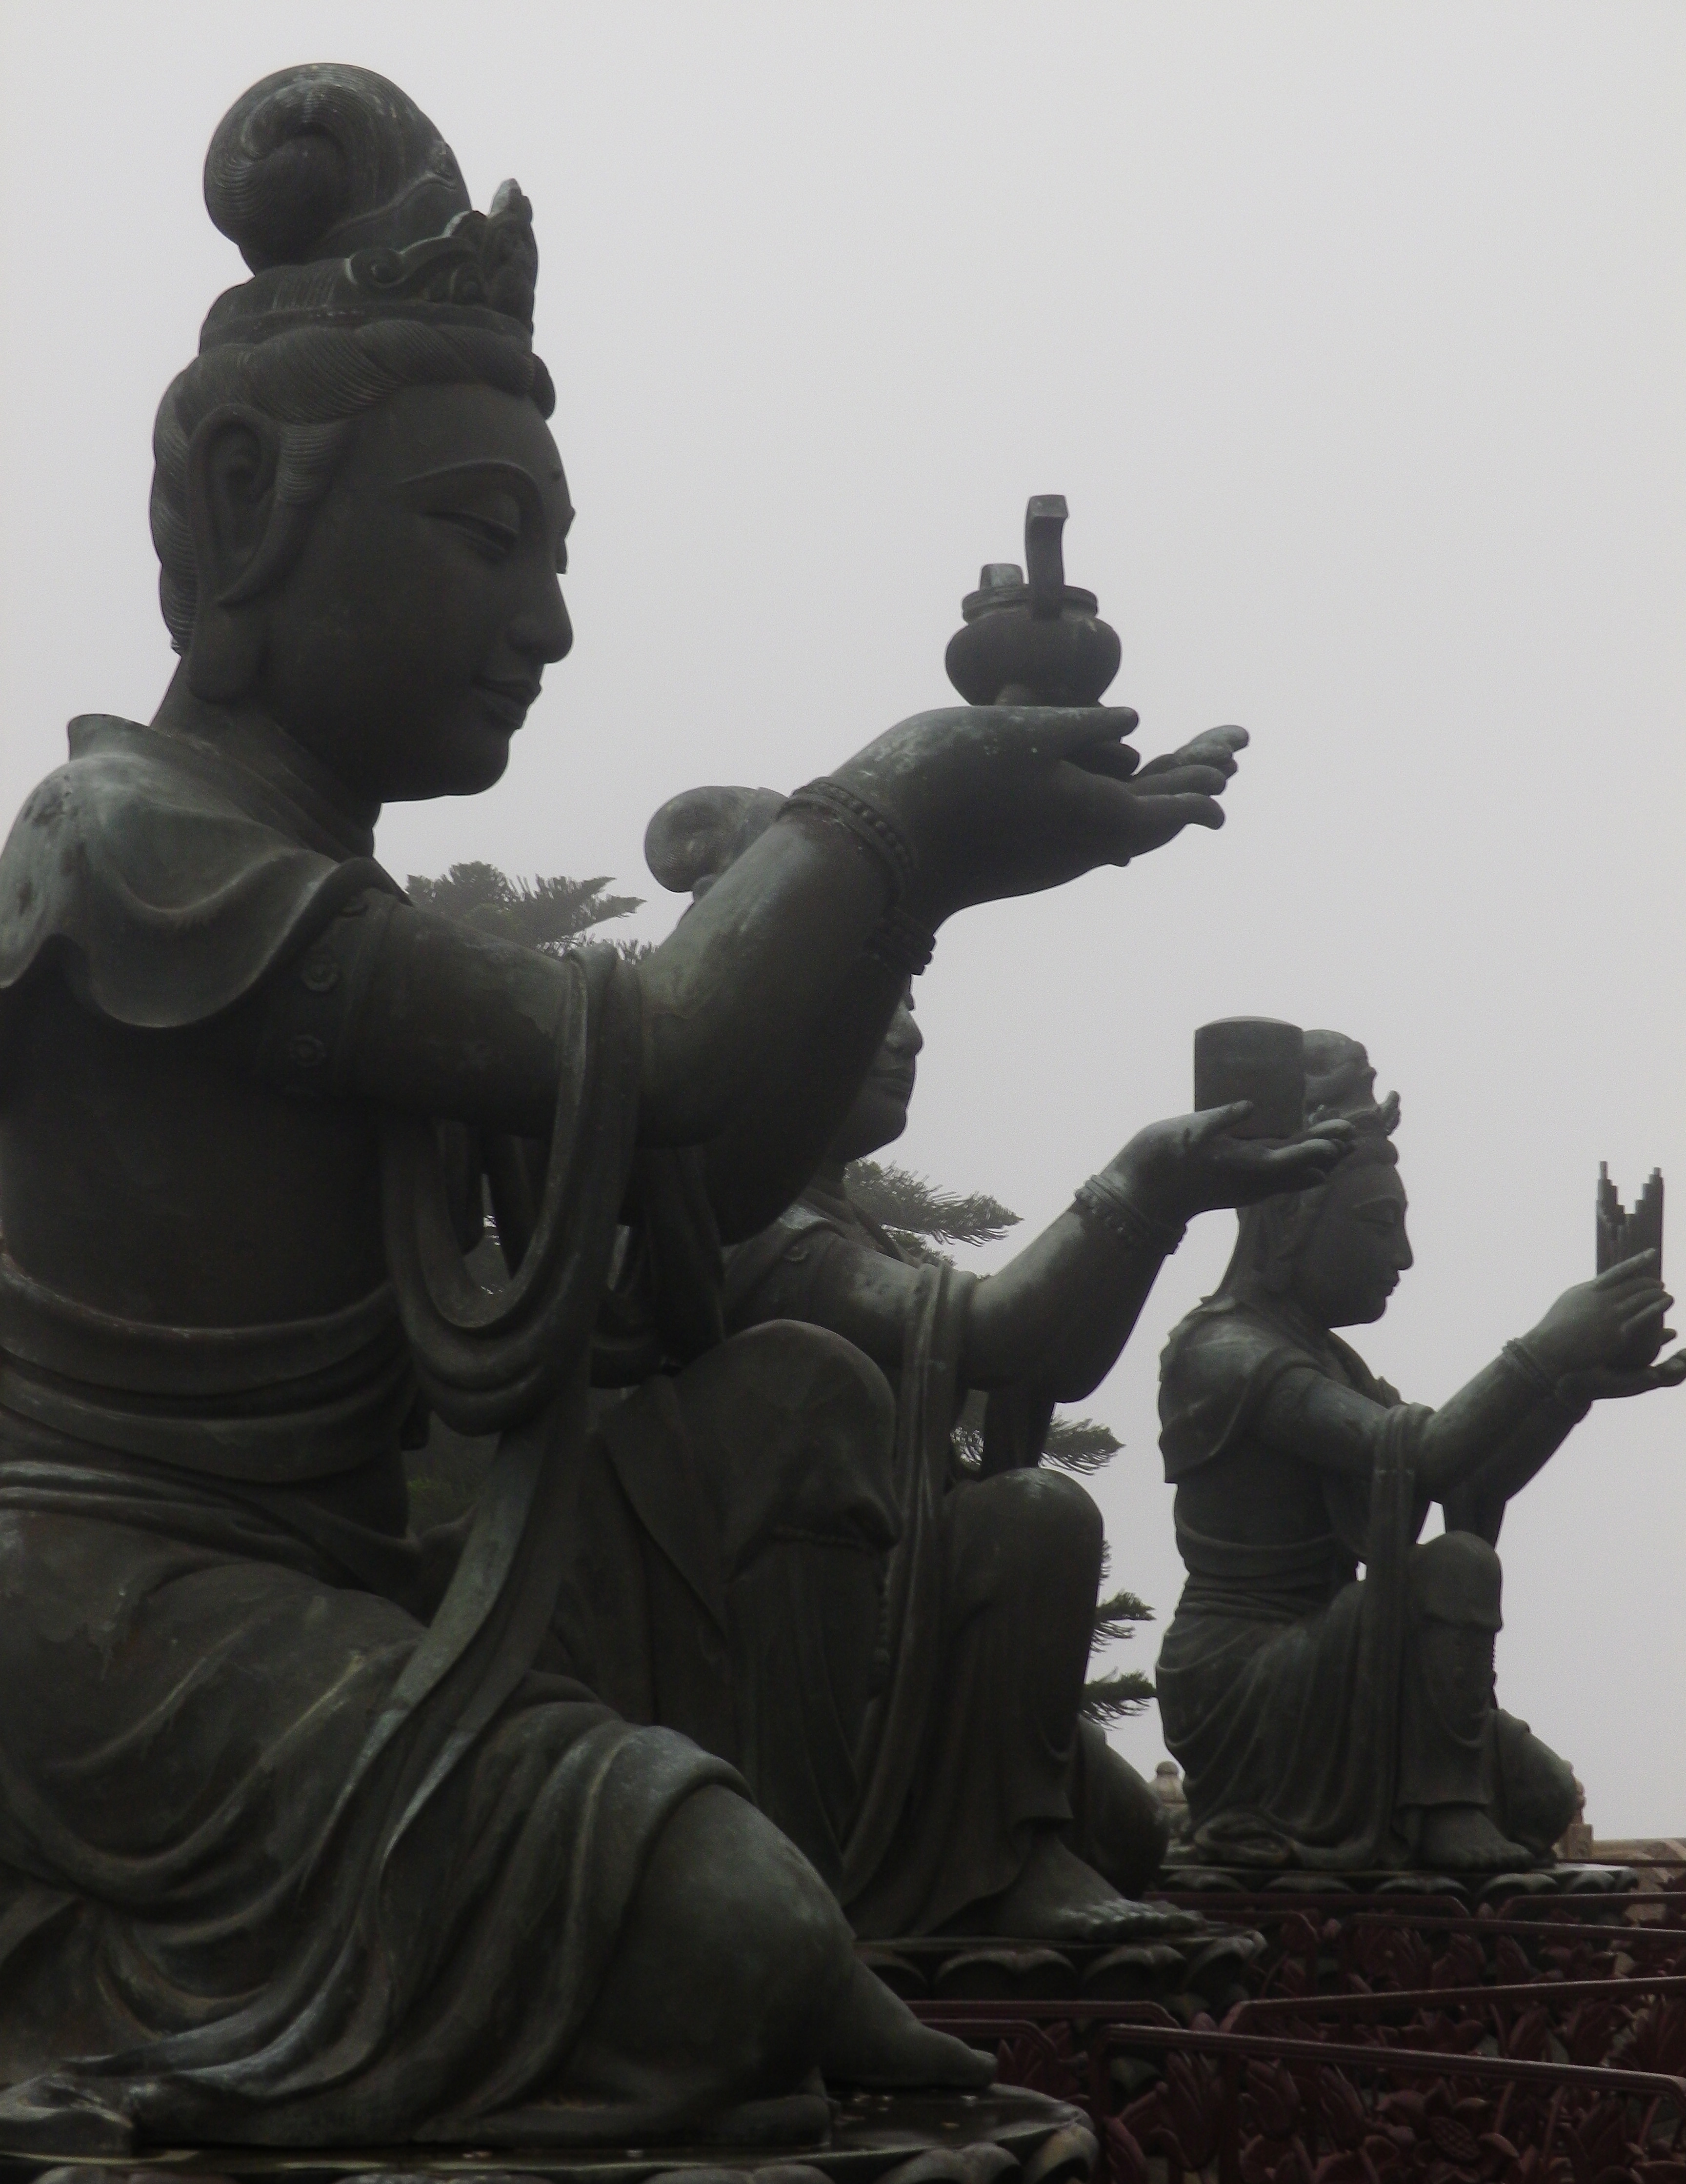 Tian Tian buddha – Hong Kong – Lantau Island